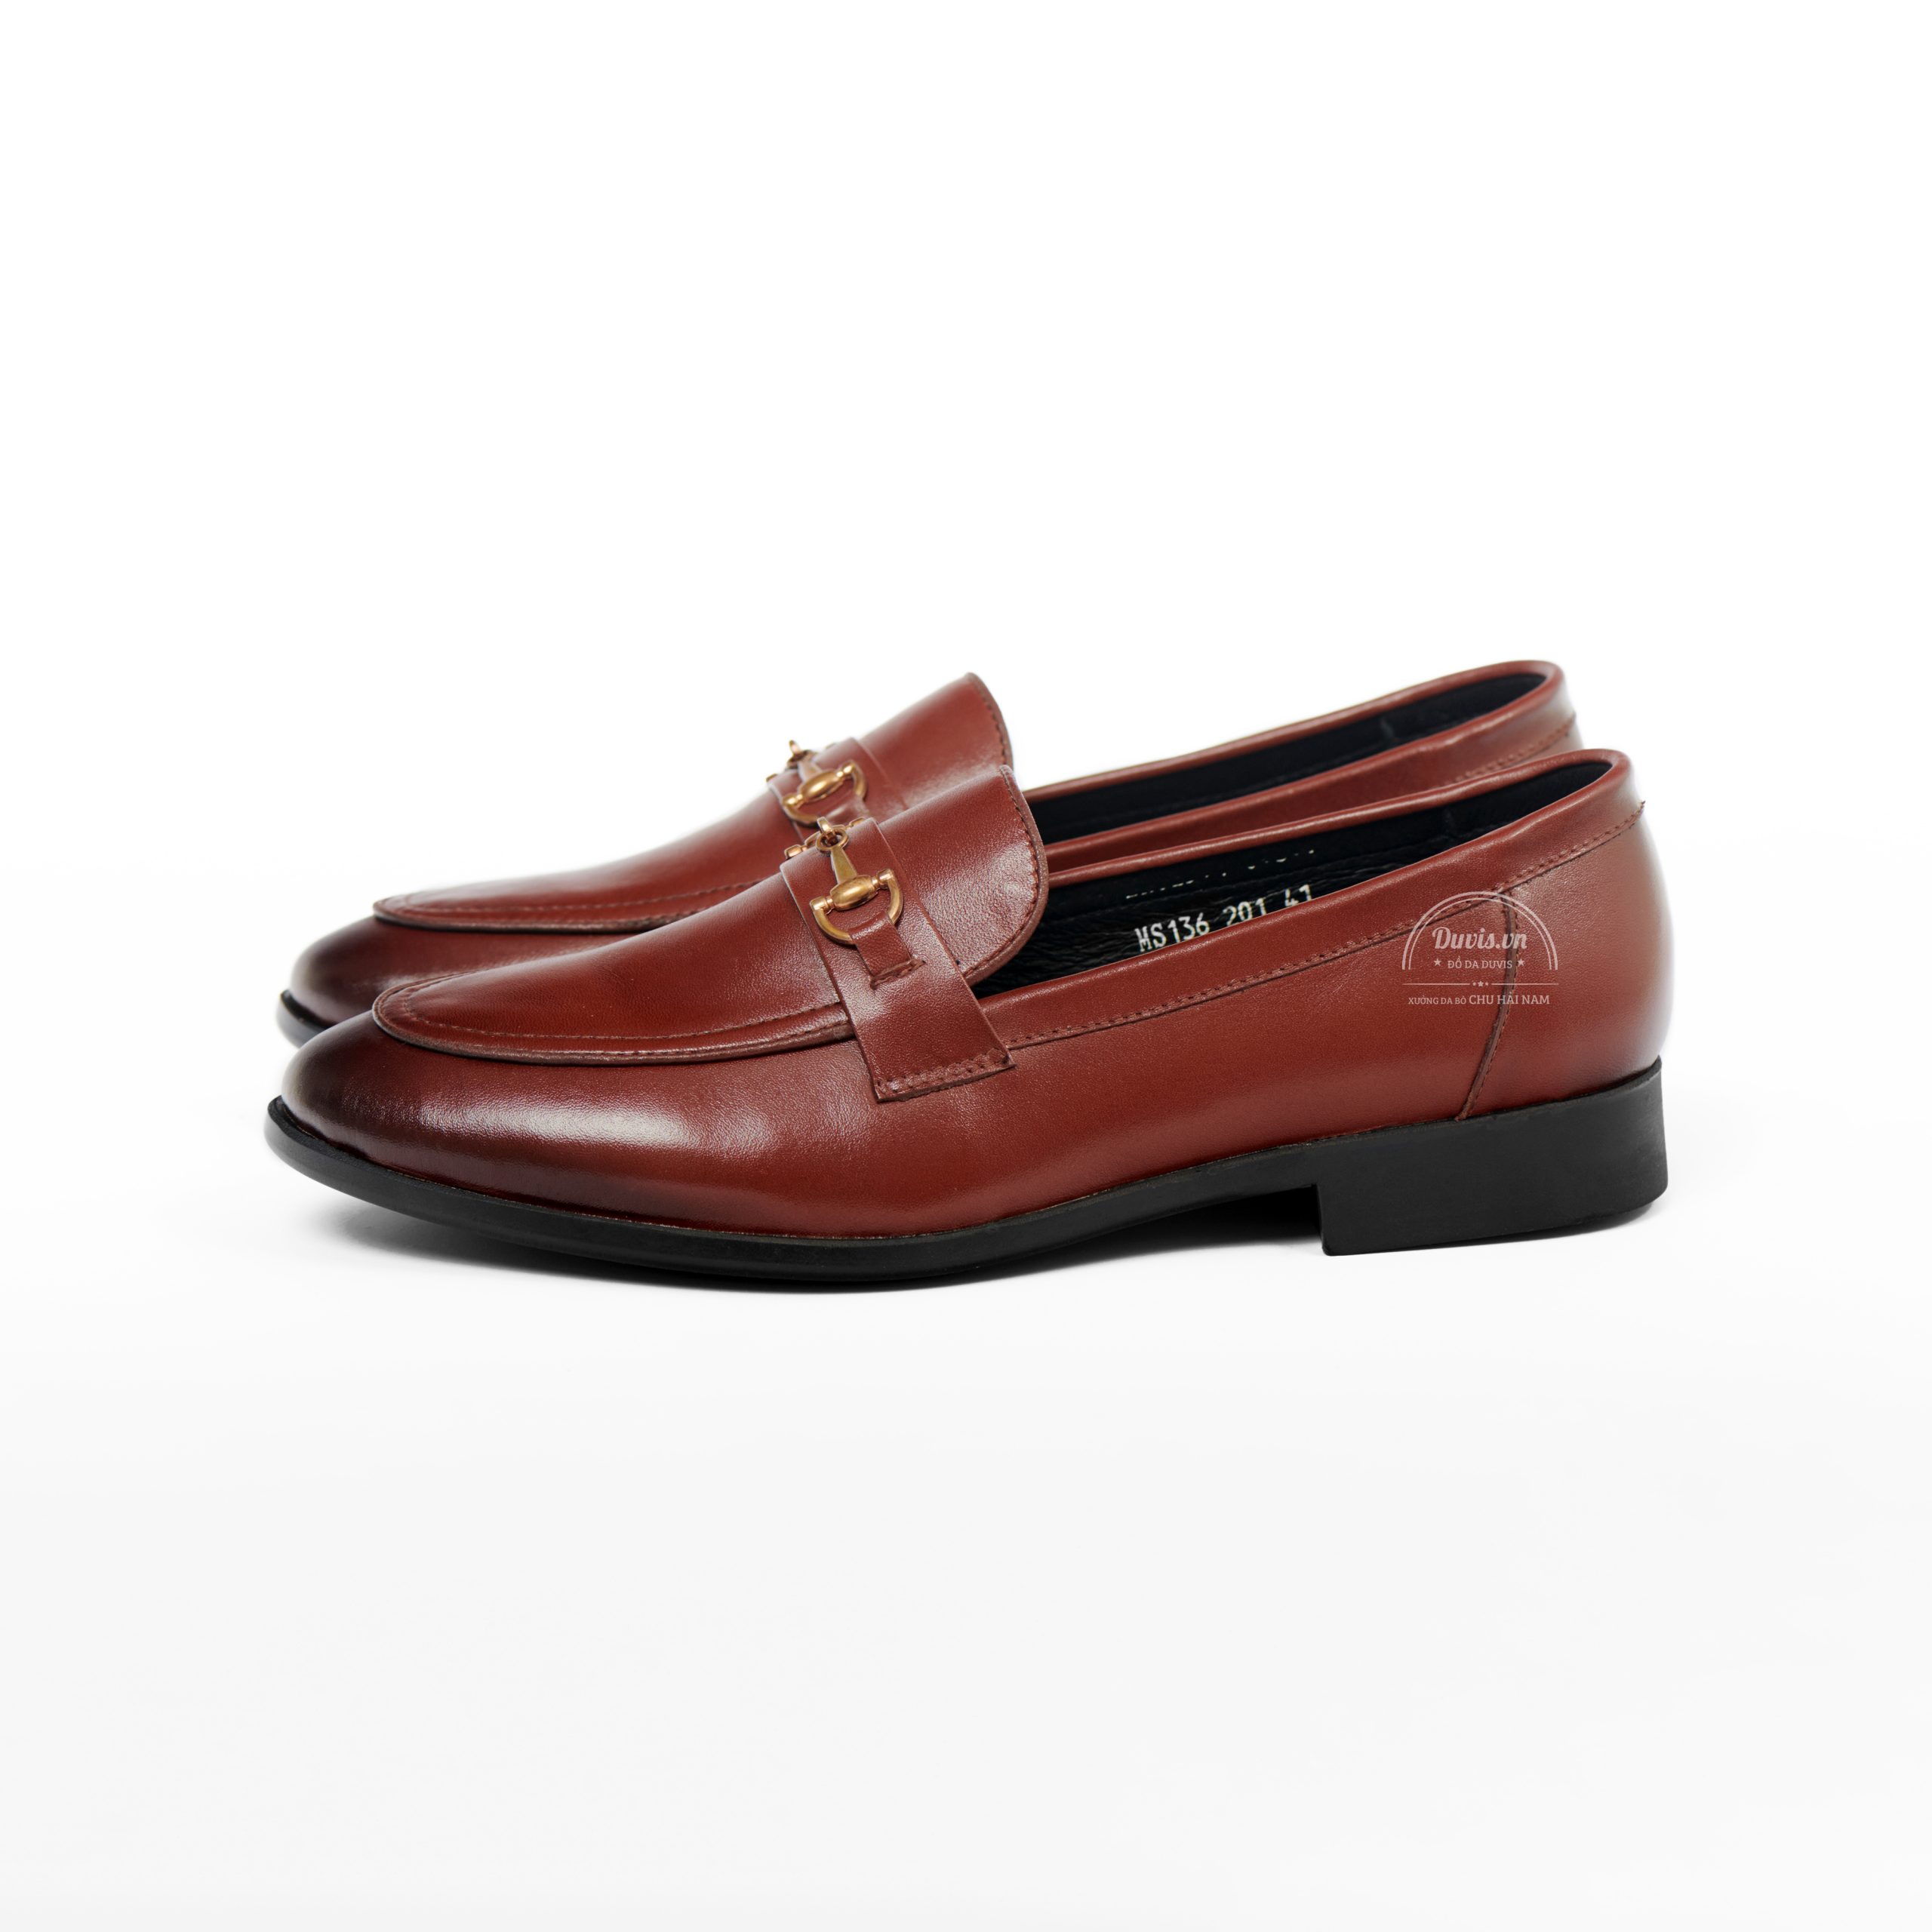 Giày Da Công Sở CX32 làm từ Da bò thật 100% , của thương hiệu giày da Duvis do xưởng da bò Chu Hải Nam sản xuất. Đổi trả nếu phát hiện giả da